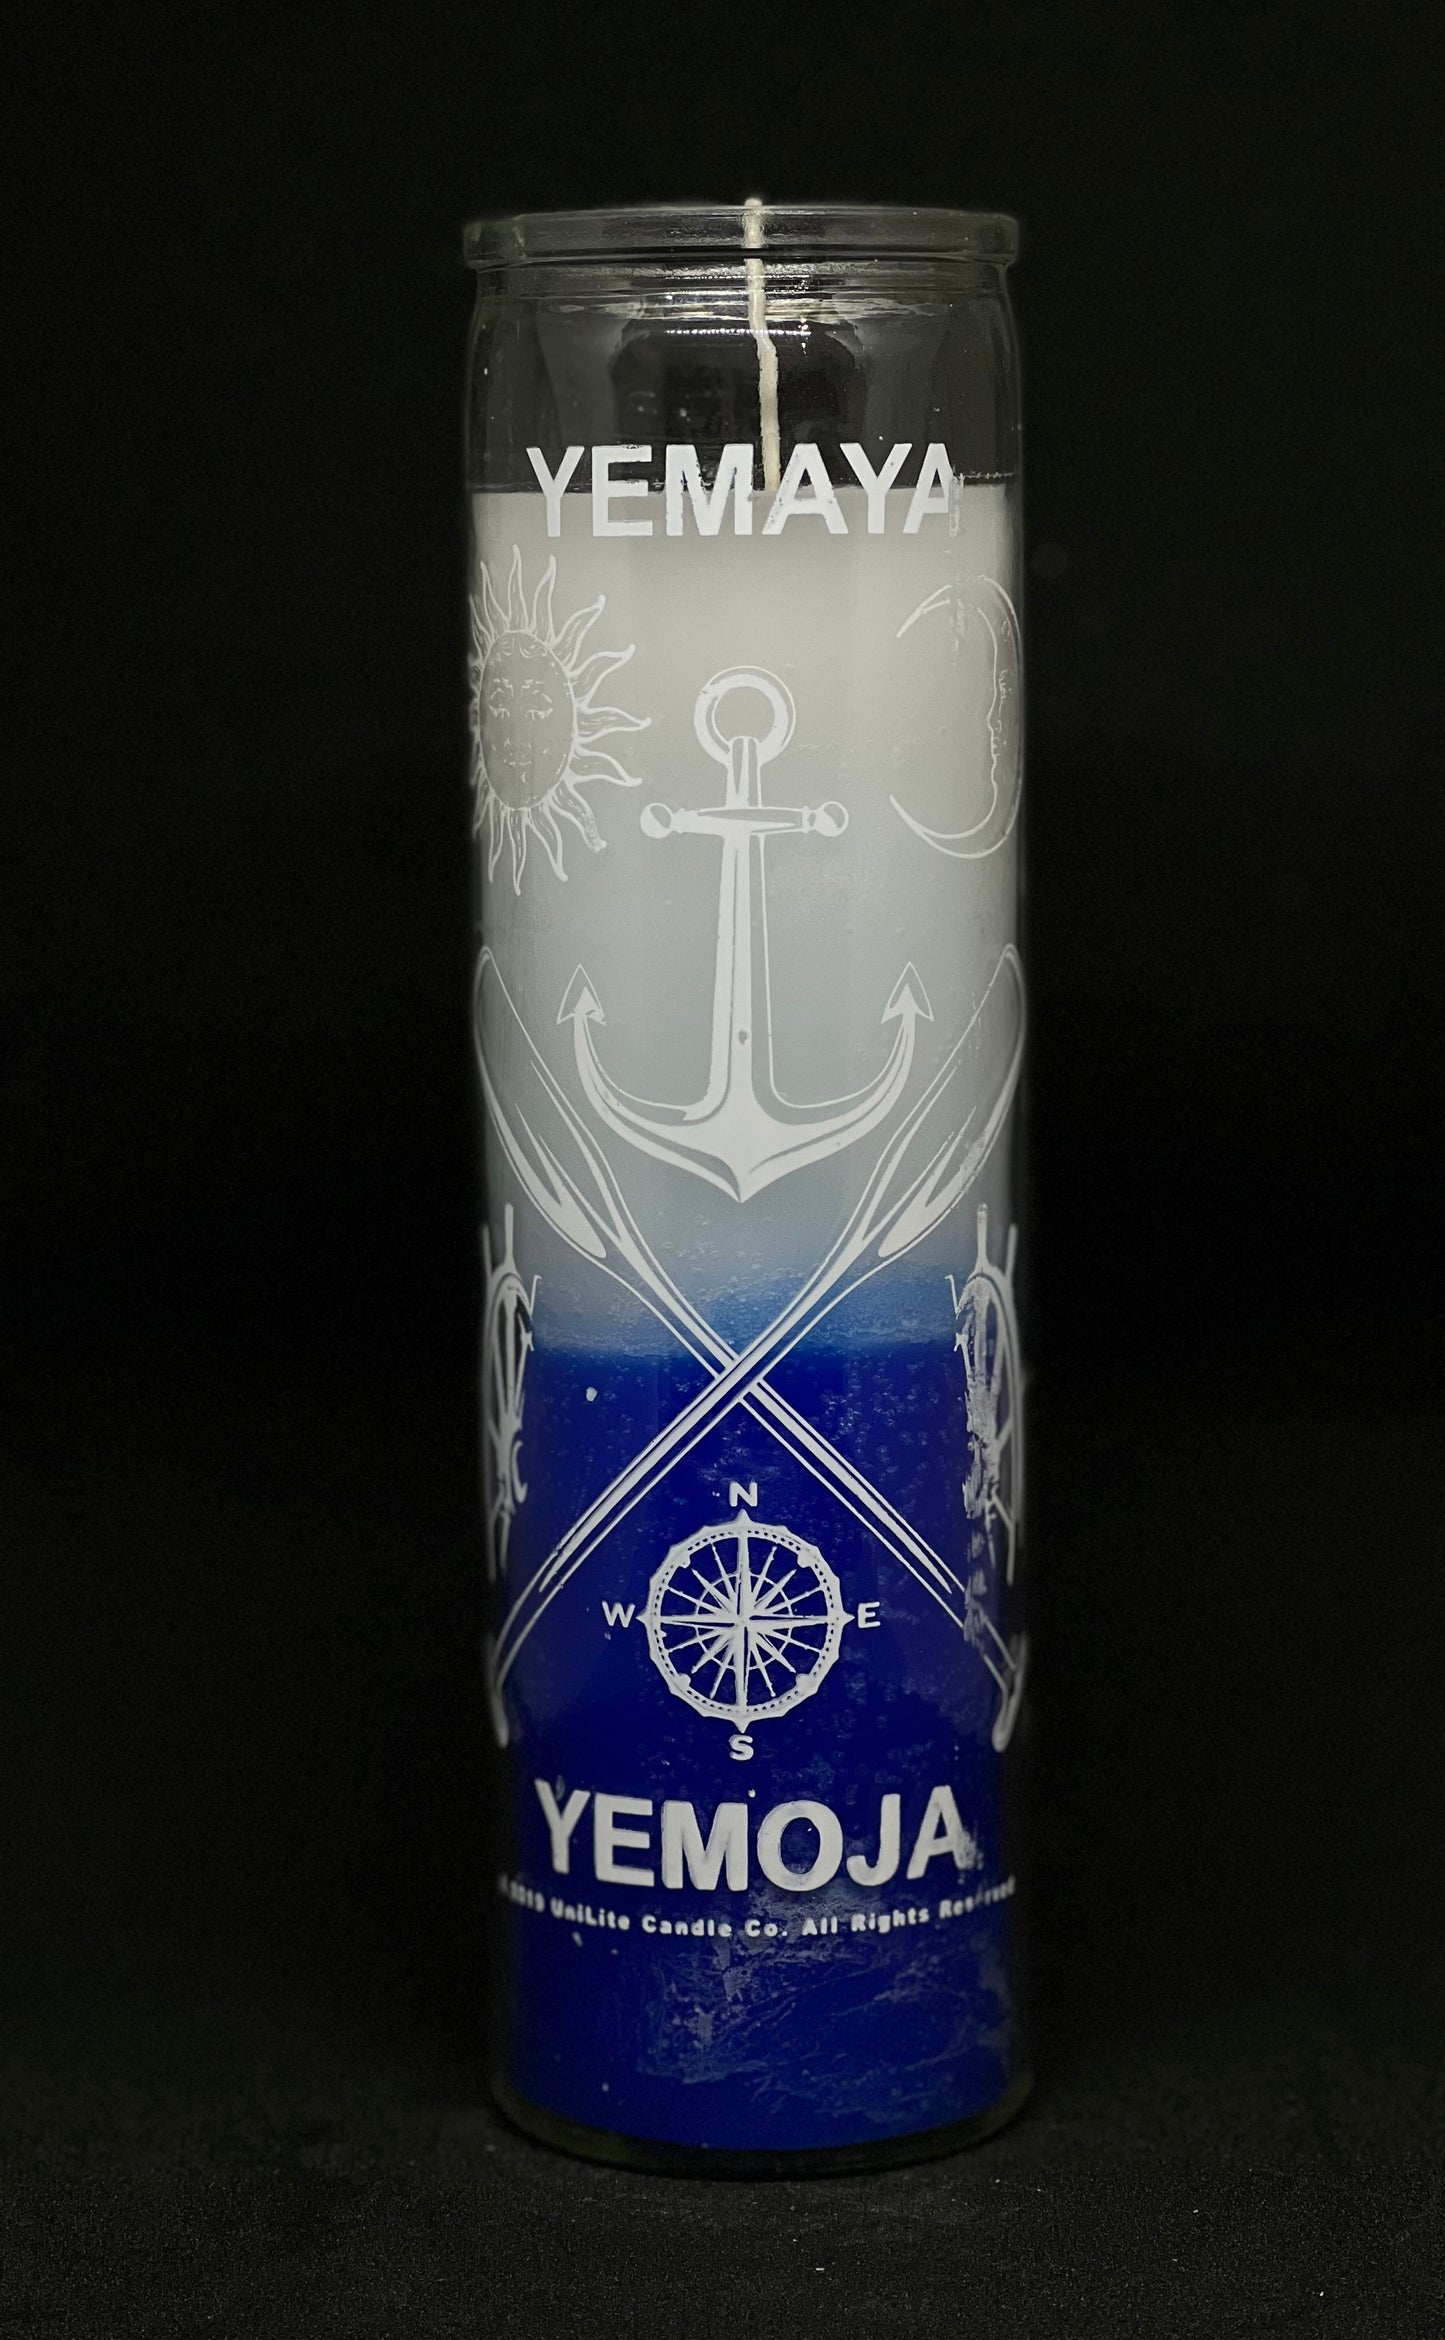 Yemaya Candle/ Veladora Yemoja